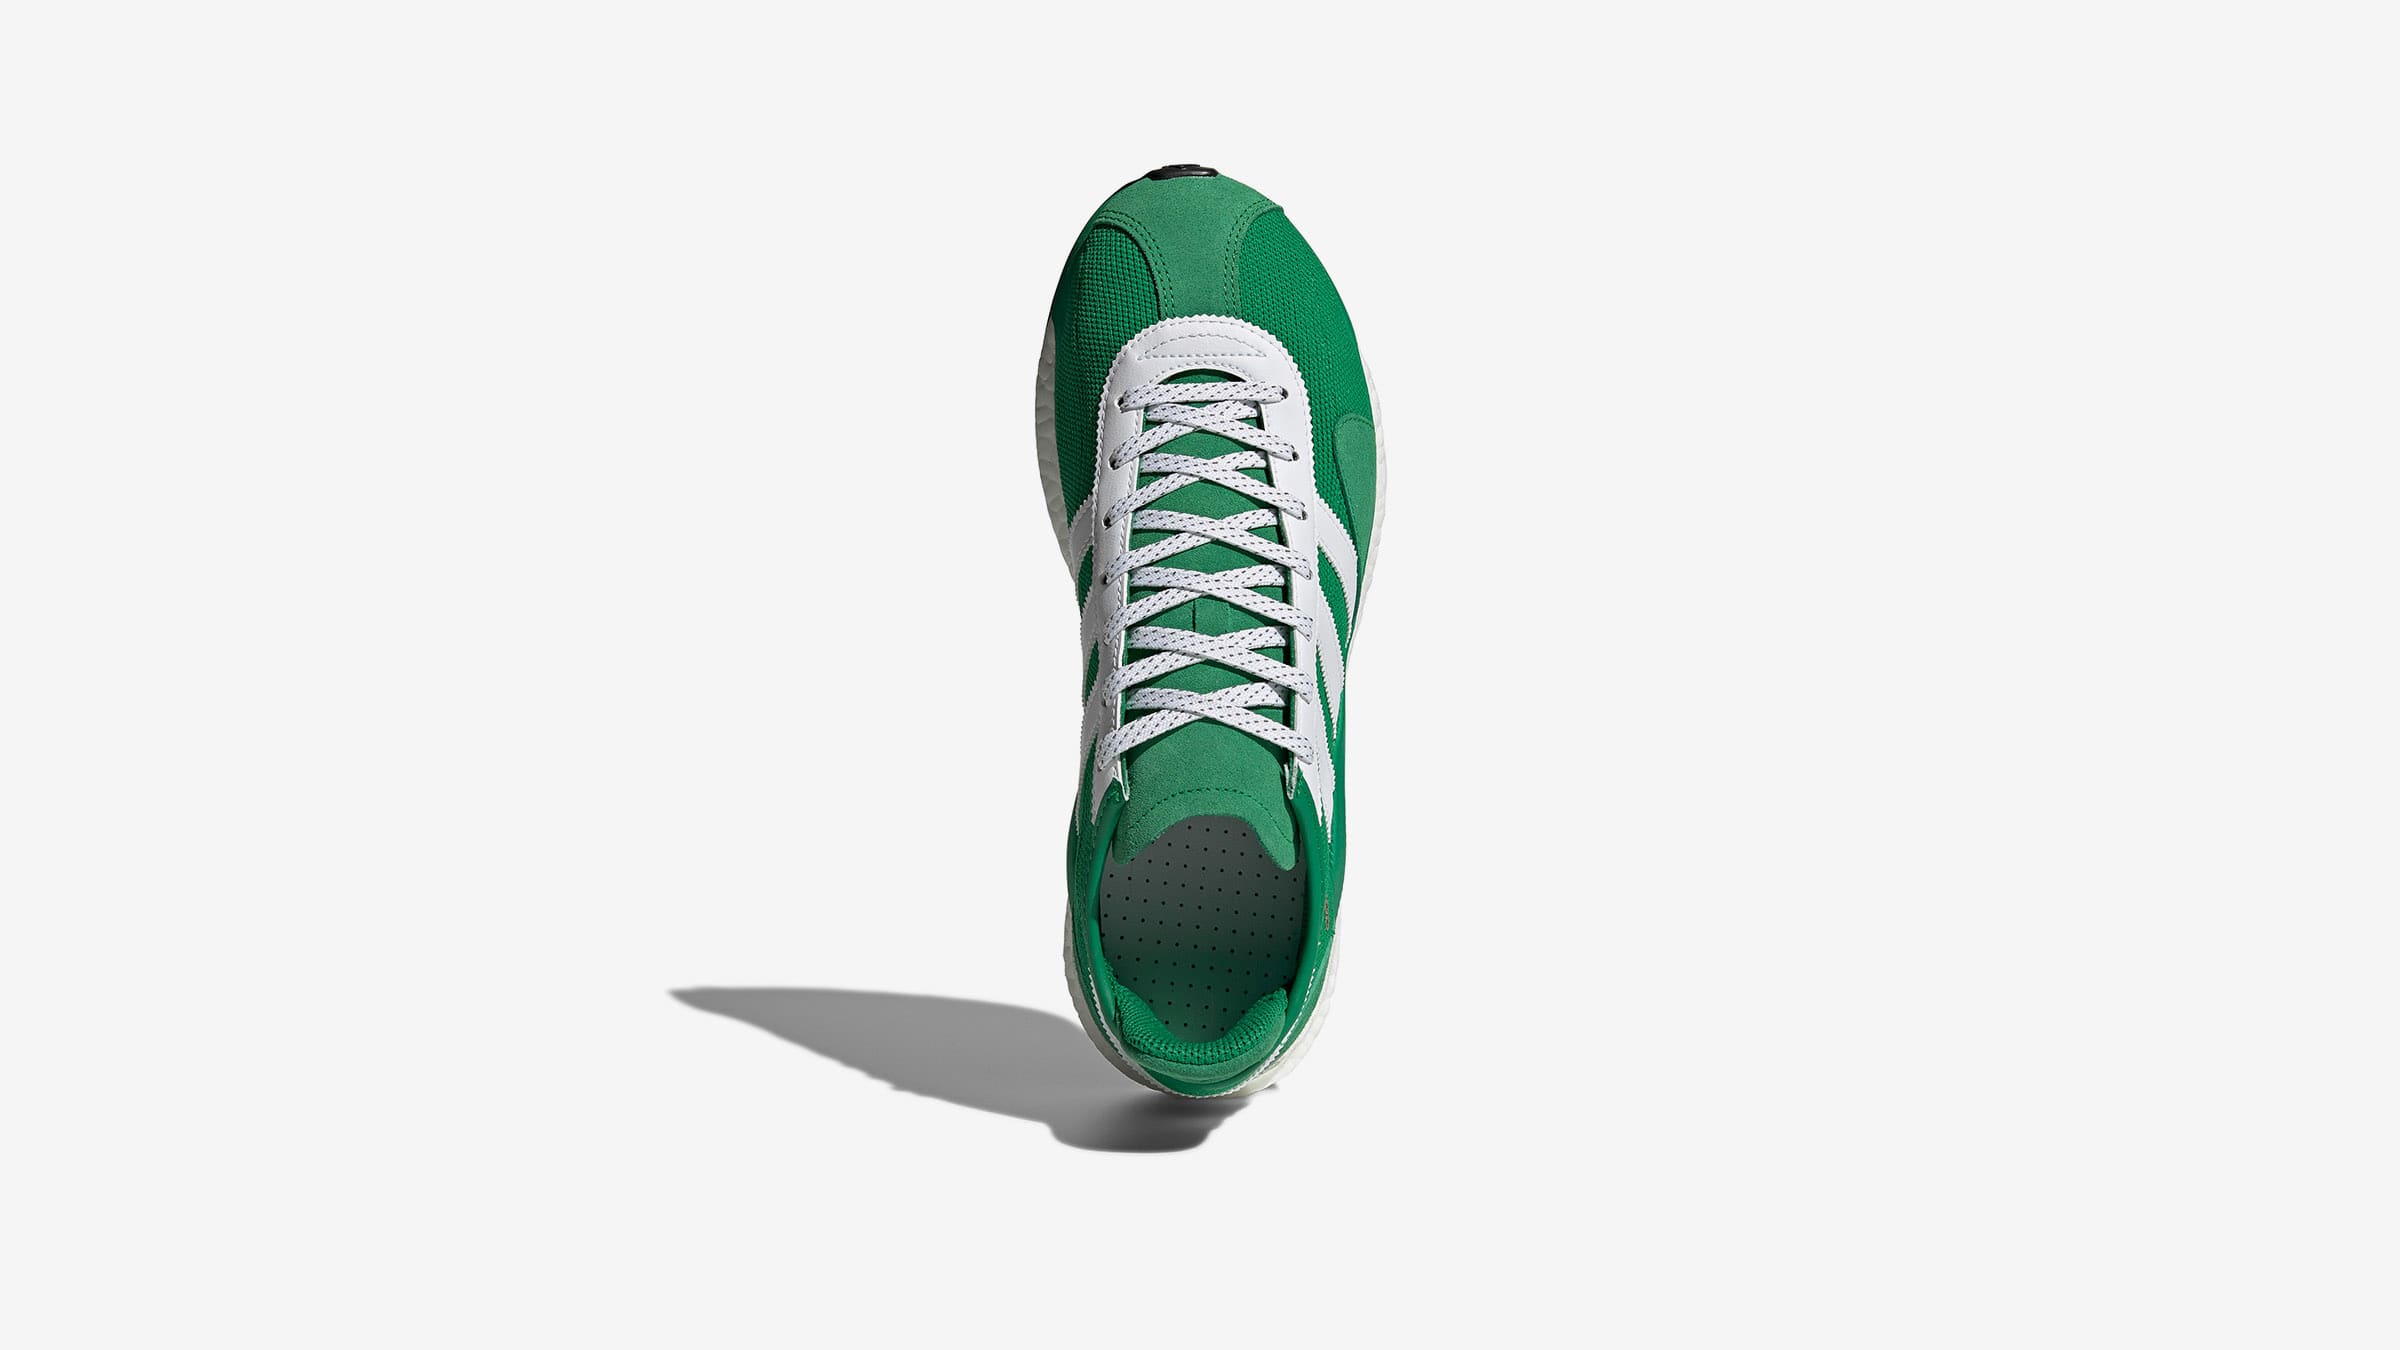 Adidas x Human Made Tokio Solar Hu (Green & White) | END. Launches